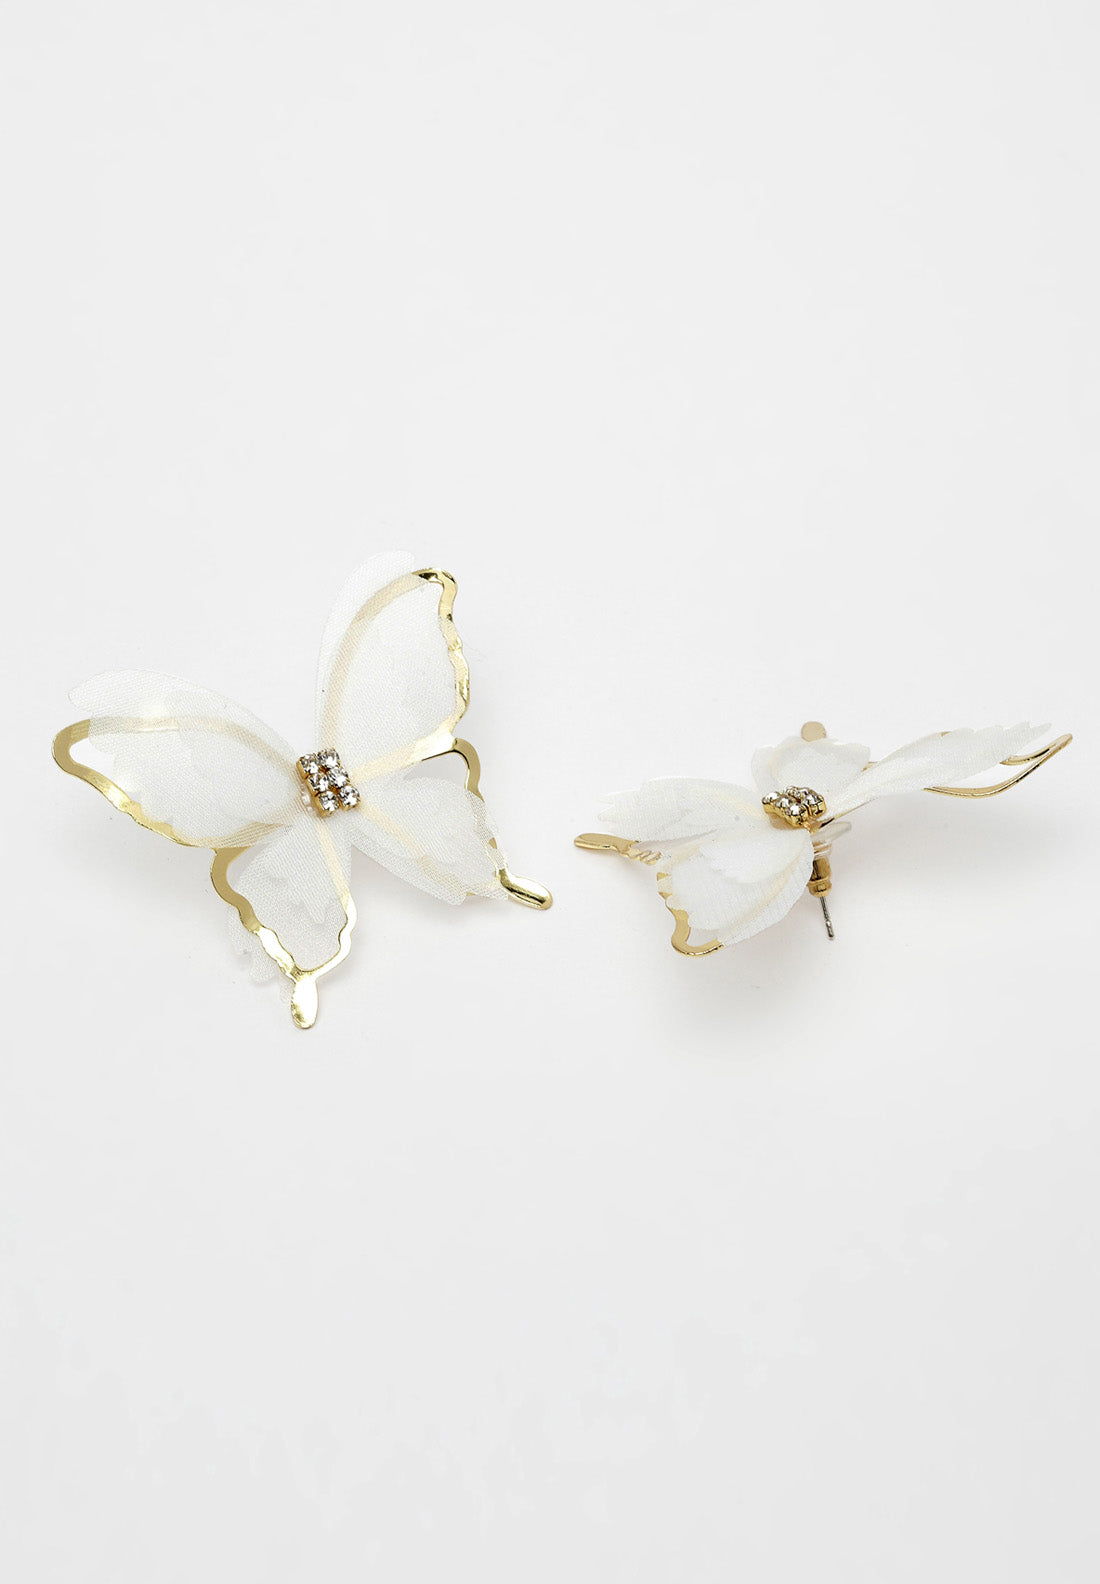 Aretes con cristales de mariposa dorados y blancos